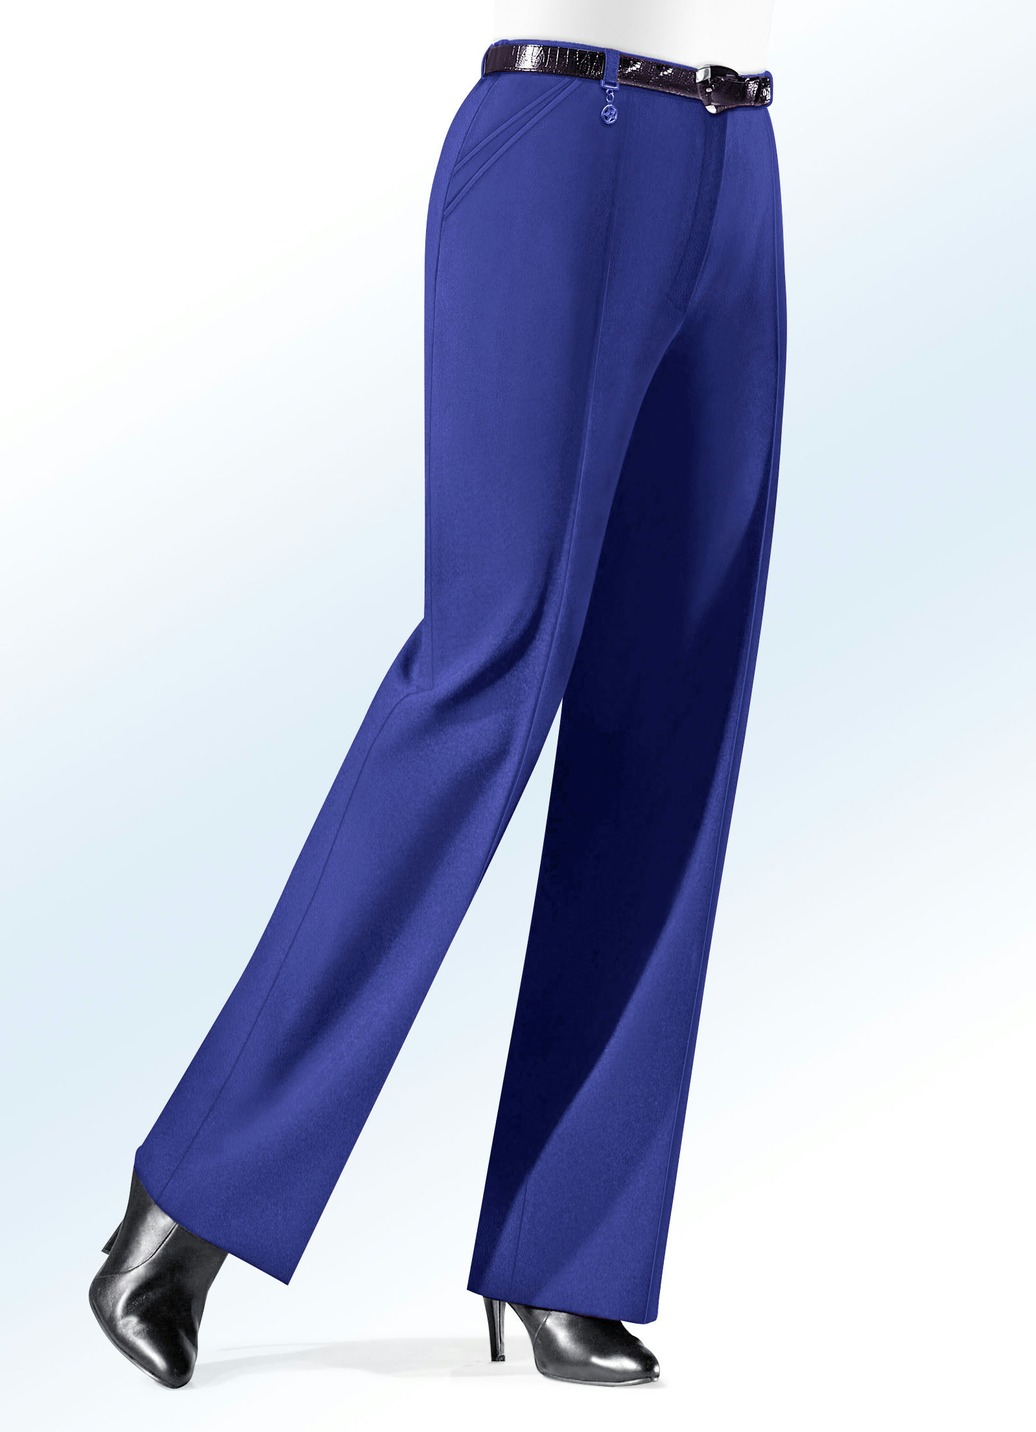 Hose mit Zieranhänger in 6 Farben, Royalblau, Größe 48 von KLAUS MODELLE